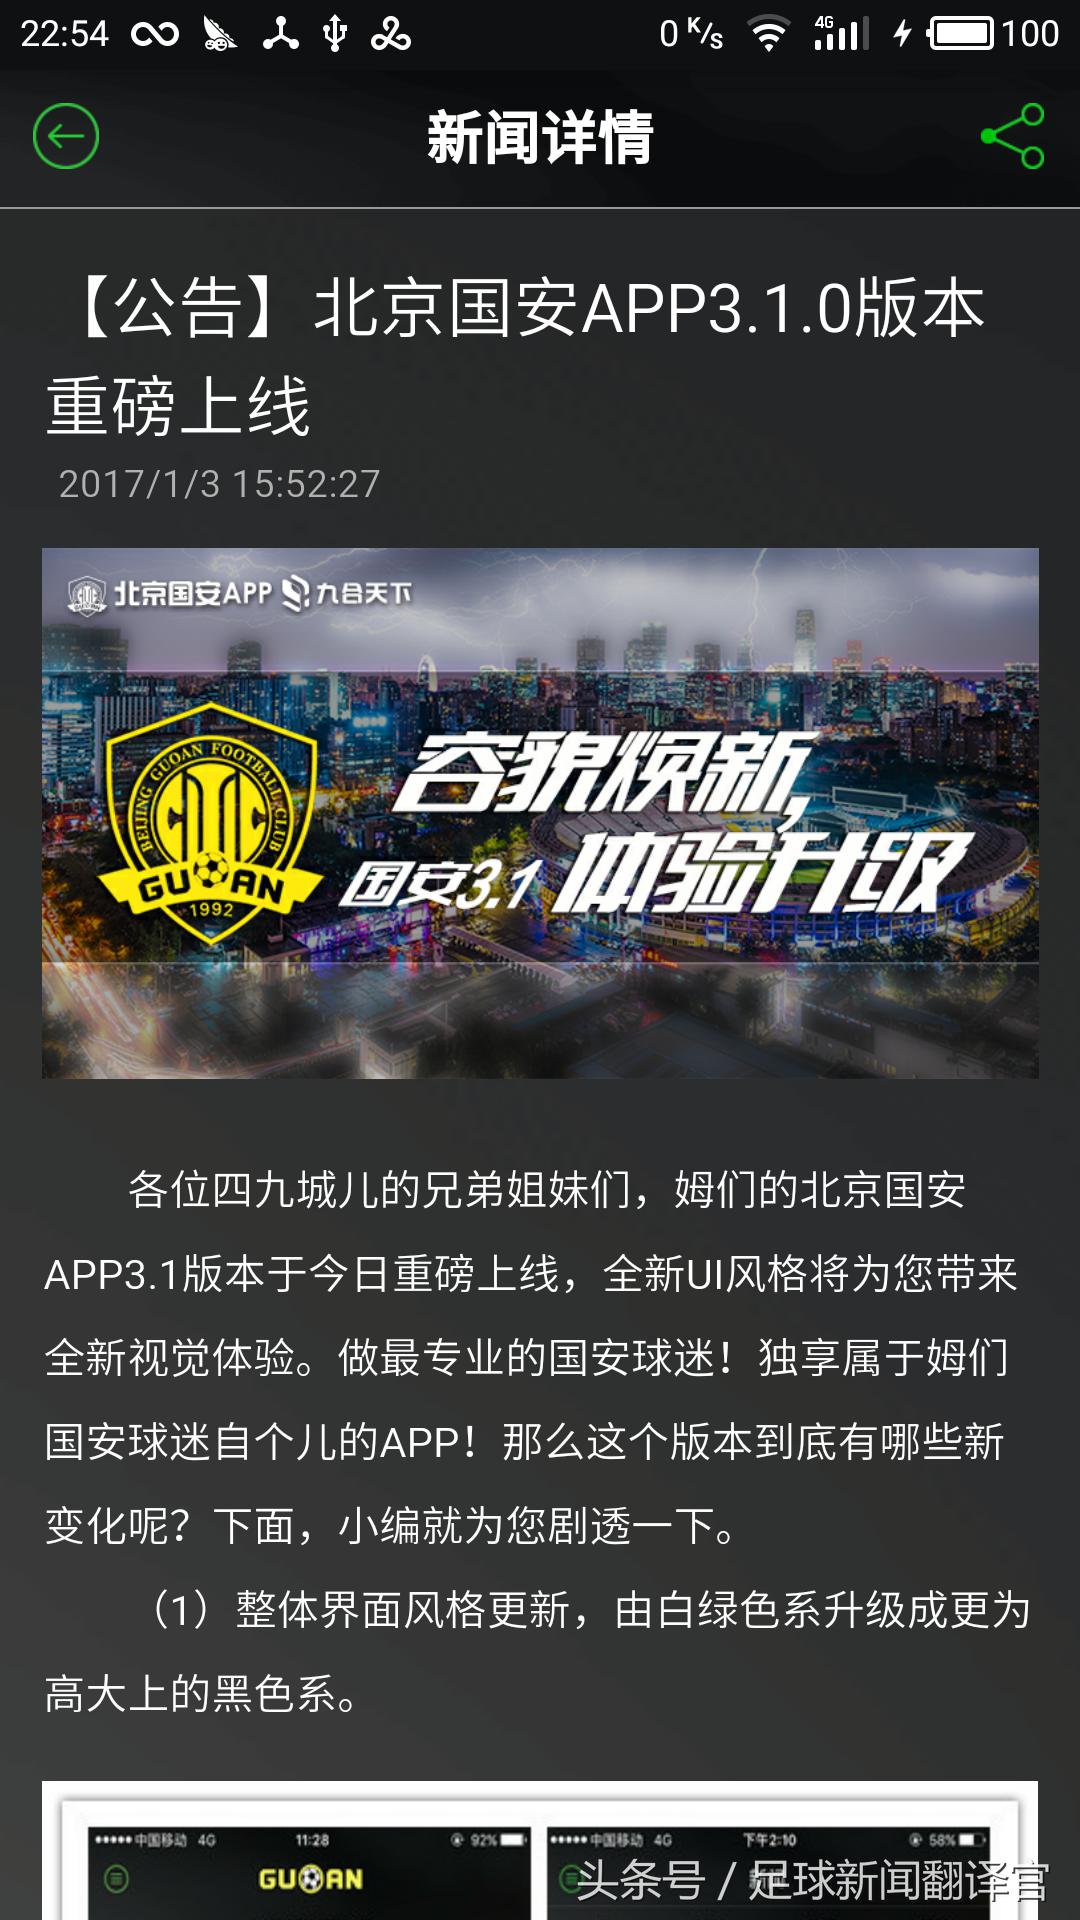 中超公司app 中超俱乐部APP使用及评测(12)